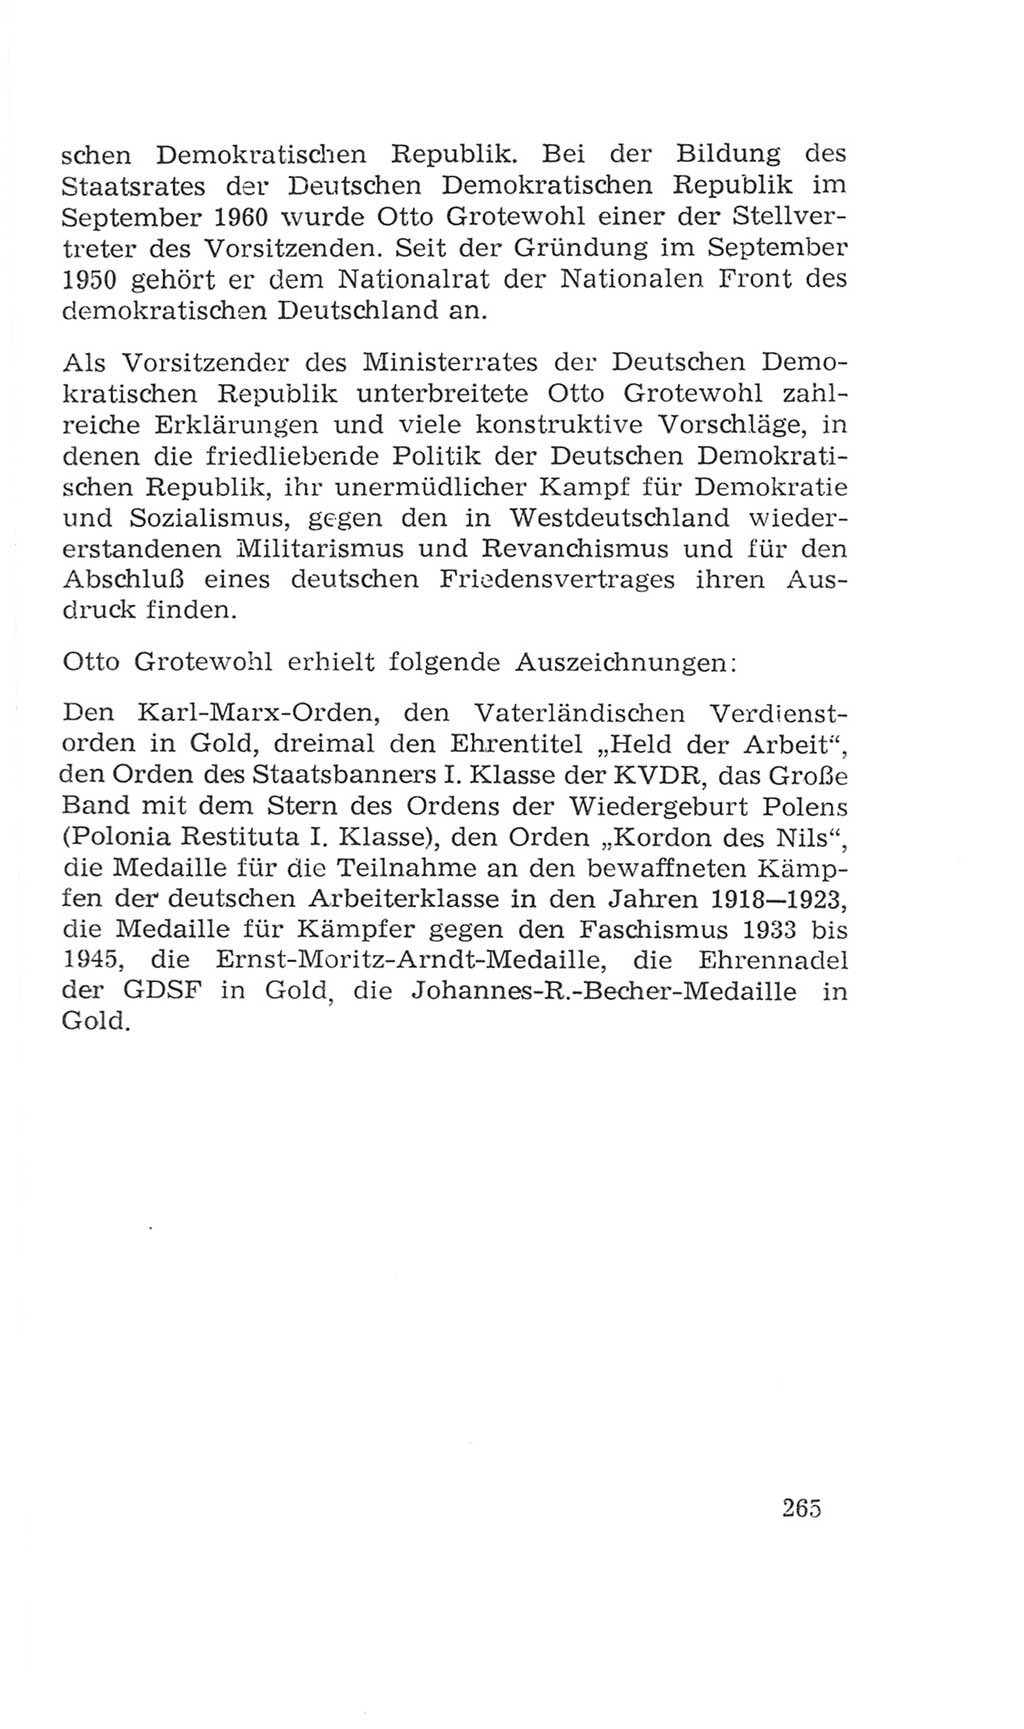 Volkskammer (VK) der Deutschen Demokratischen Republik (DDR), 4. Wahlperiode 1963-1967, Seite 265 (VK. DDR 4. WP. 1963-1967, S. 265)